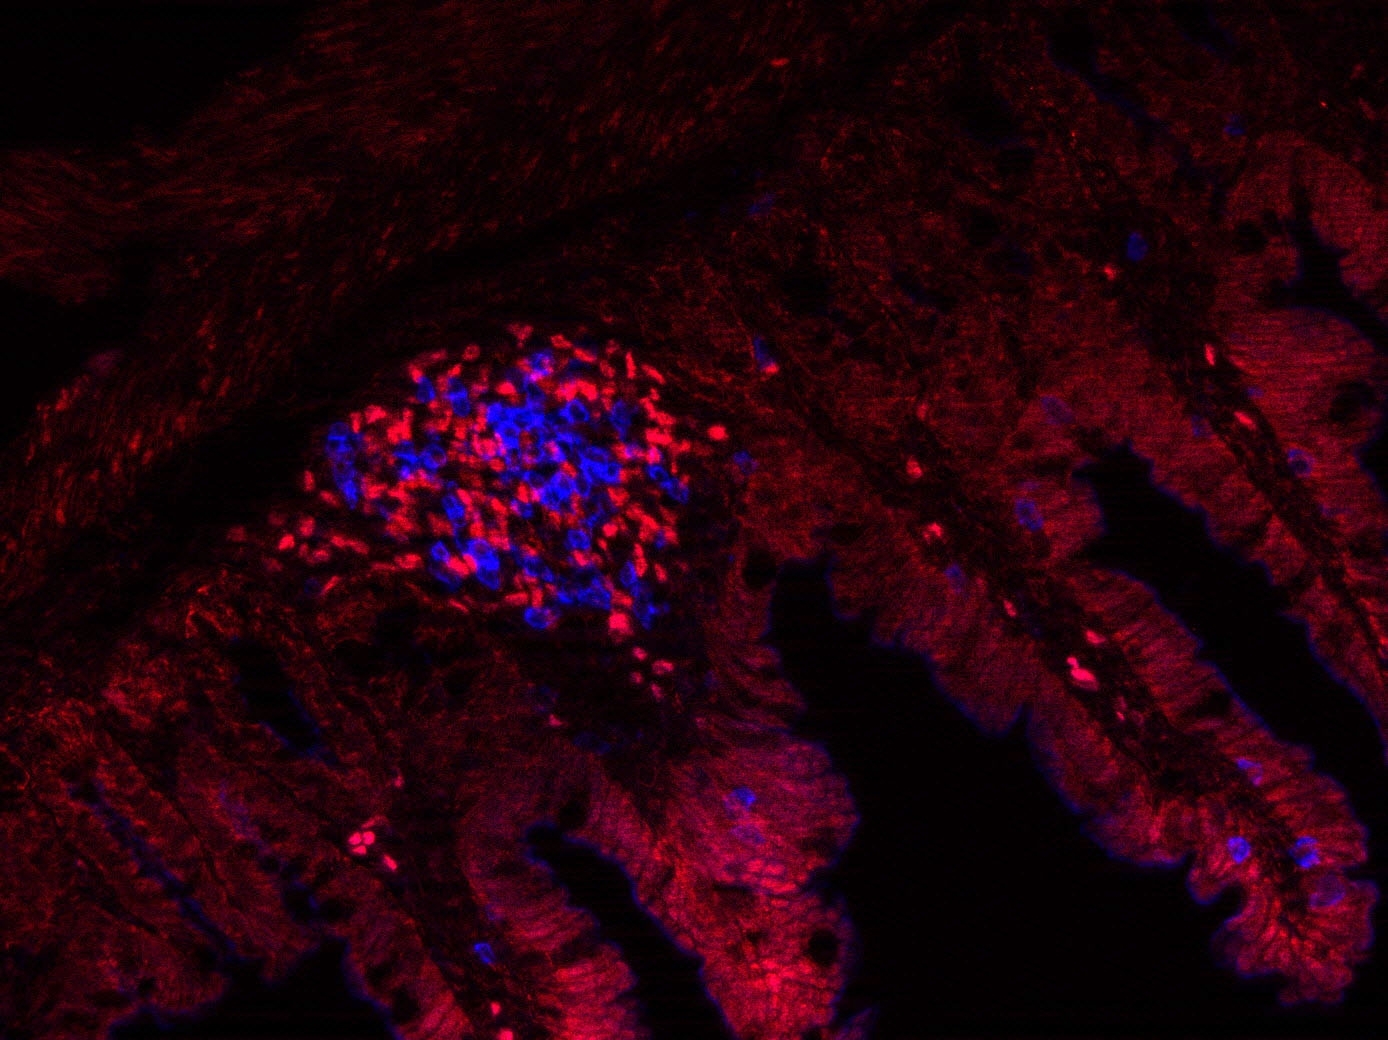 Querschnitt durch die Darmwand (matt rot) im Fluoreszenzmikroskop, mit Darmfollikeln, in denen sich LTi-Zellen (hellrot) und B-Lymphozyten befinden. Zu sehen sind zottelartige matt rot leuchtende Strukturen, an deren Basis jeweils heller rot leuchtende un